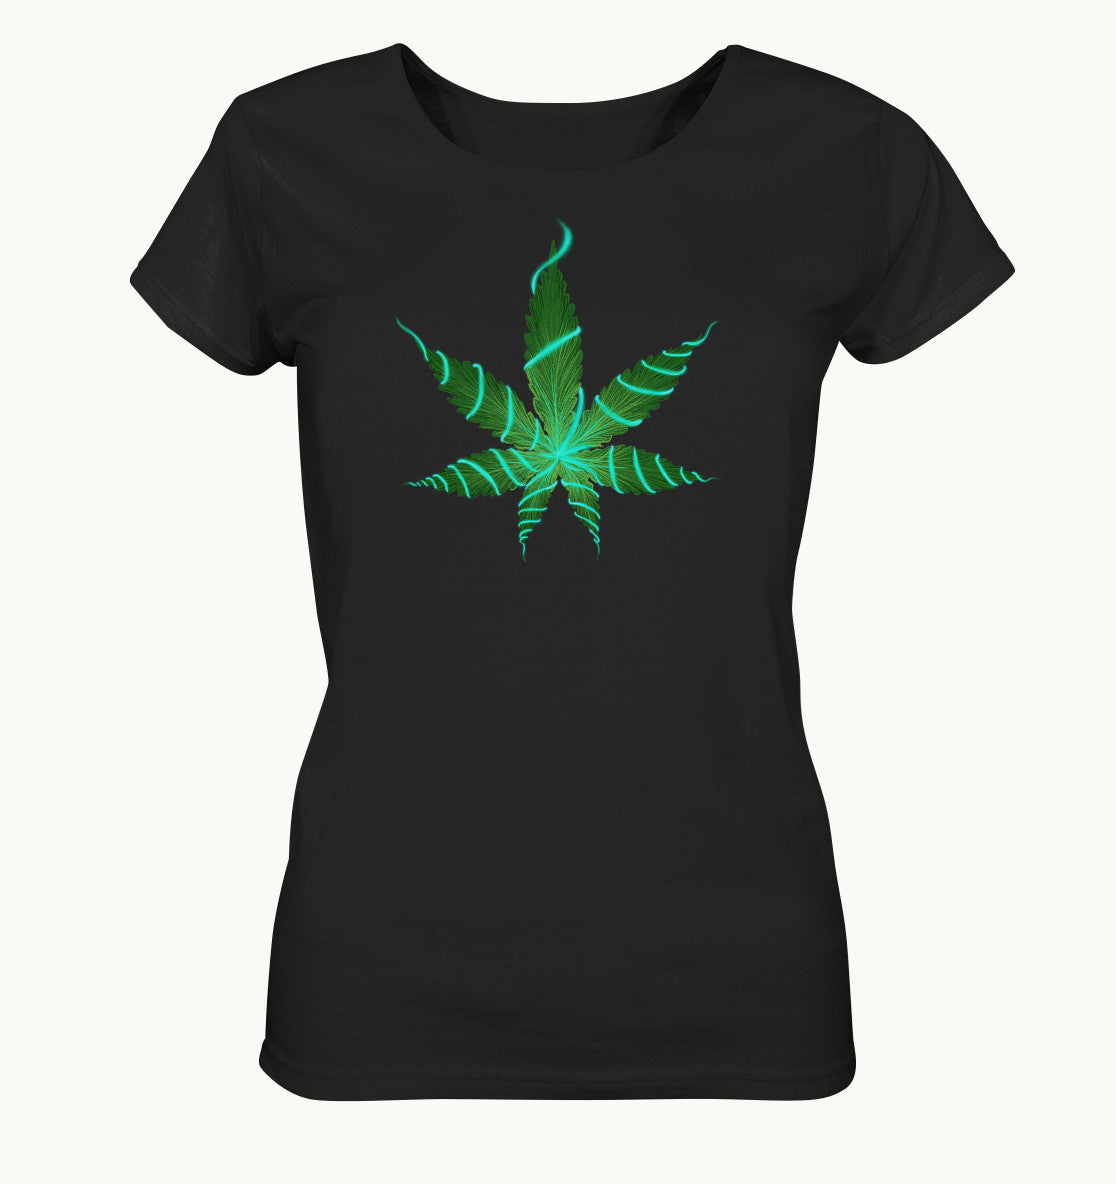 Brokkoliblatt - Ladies Organic Shirt